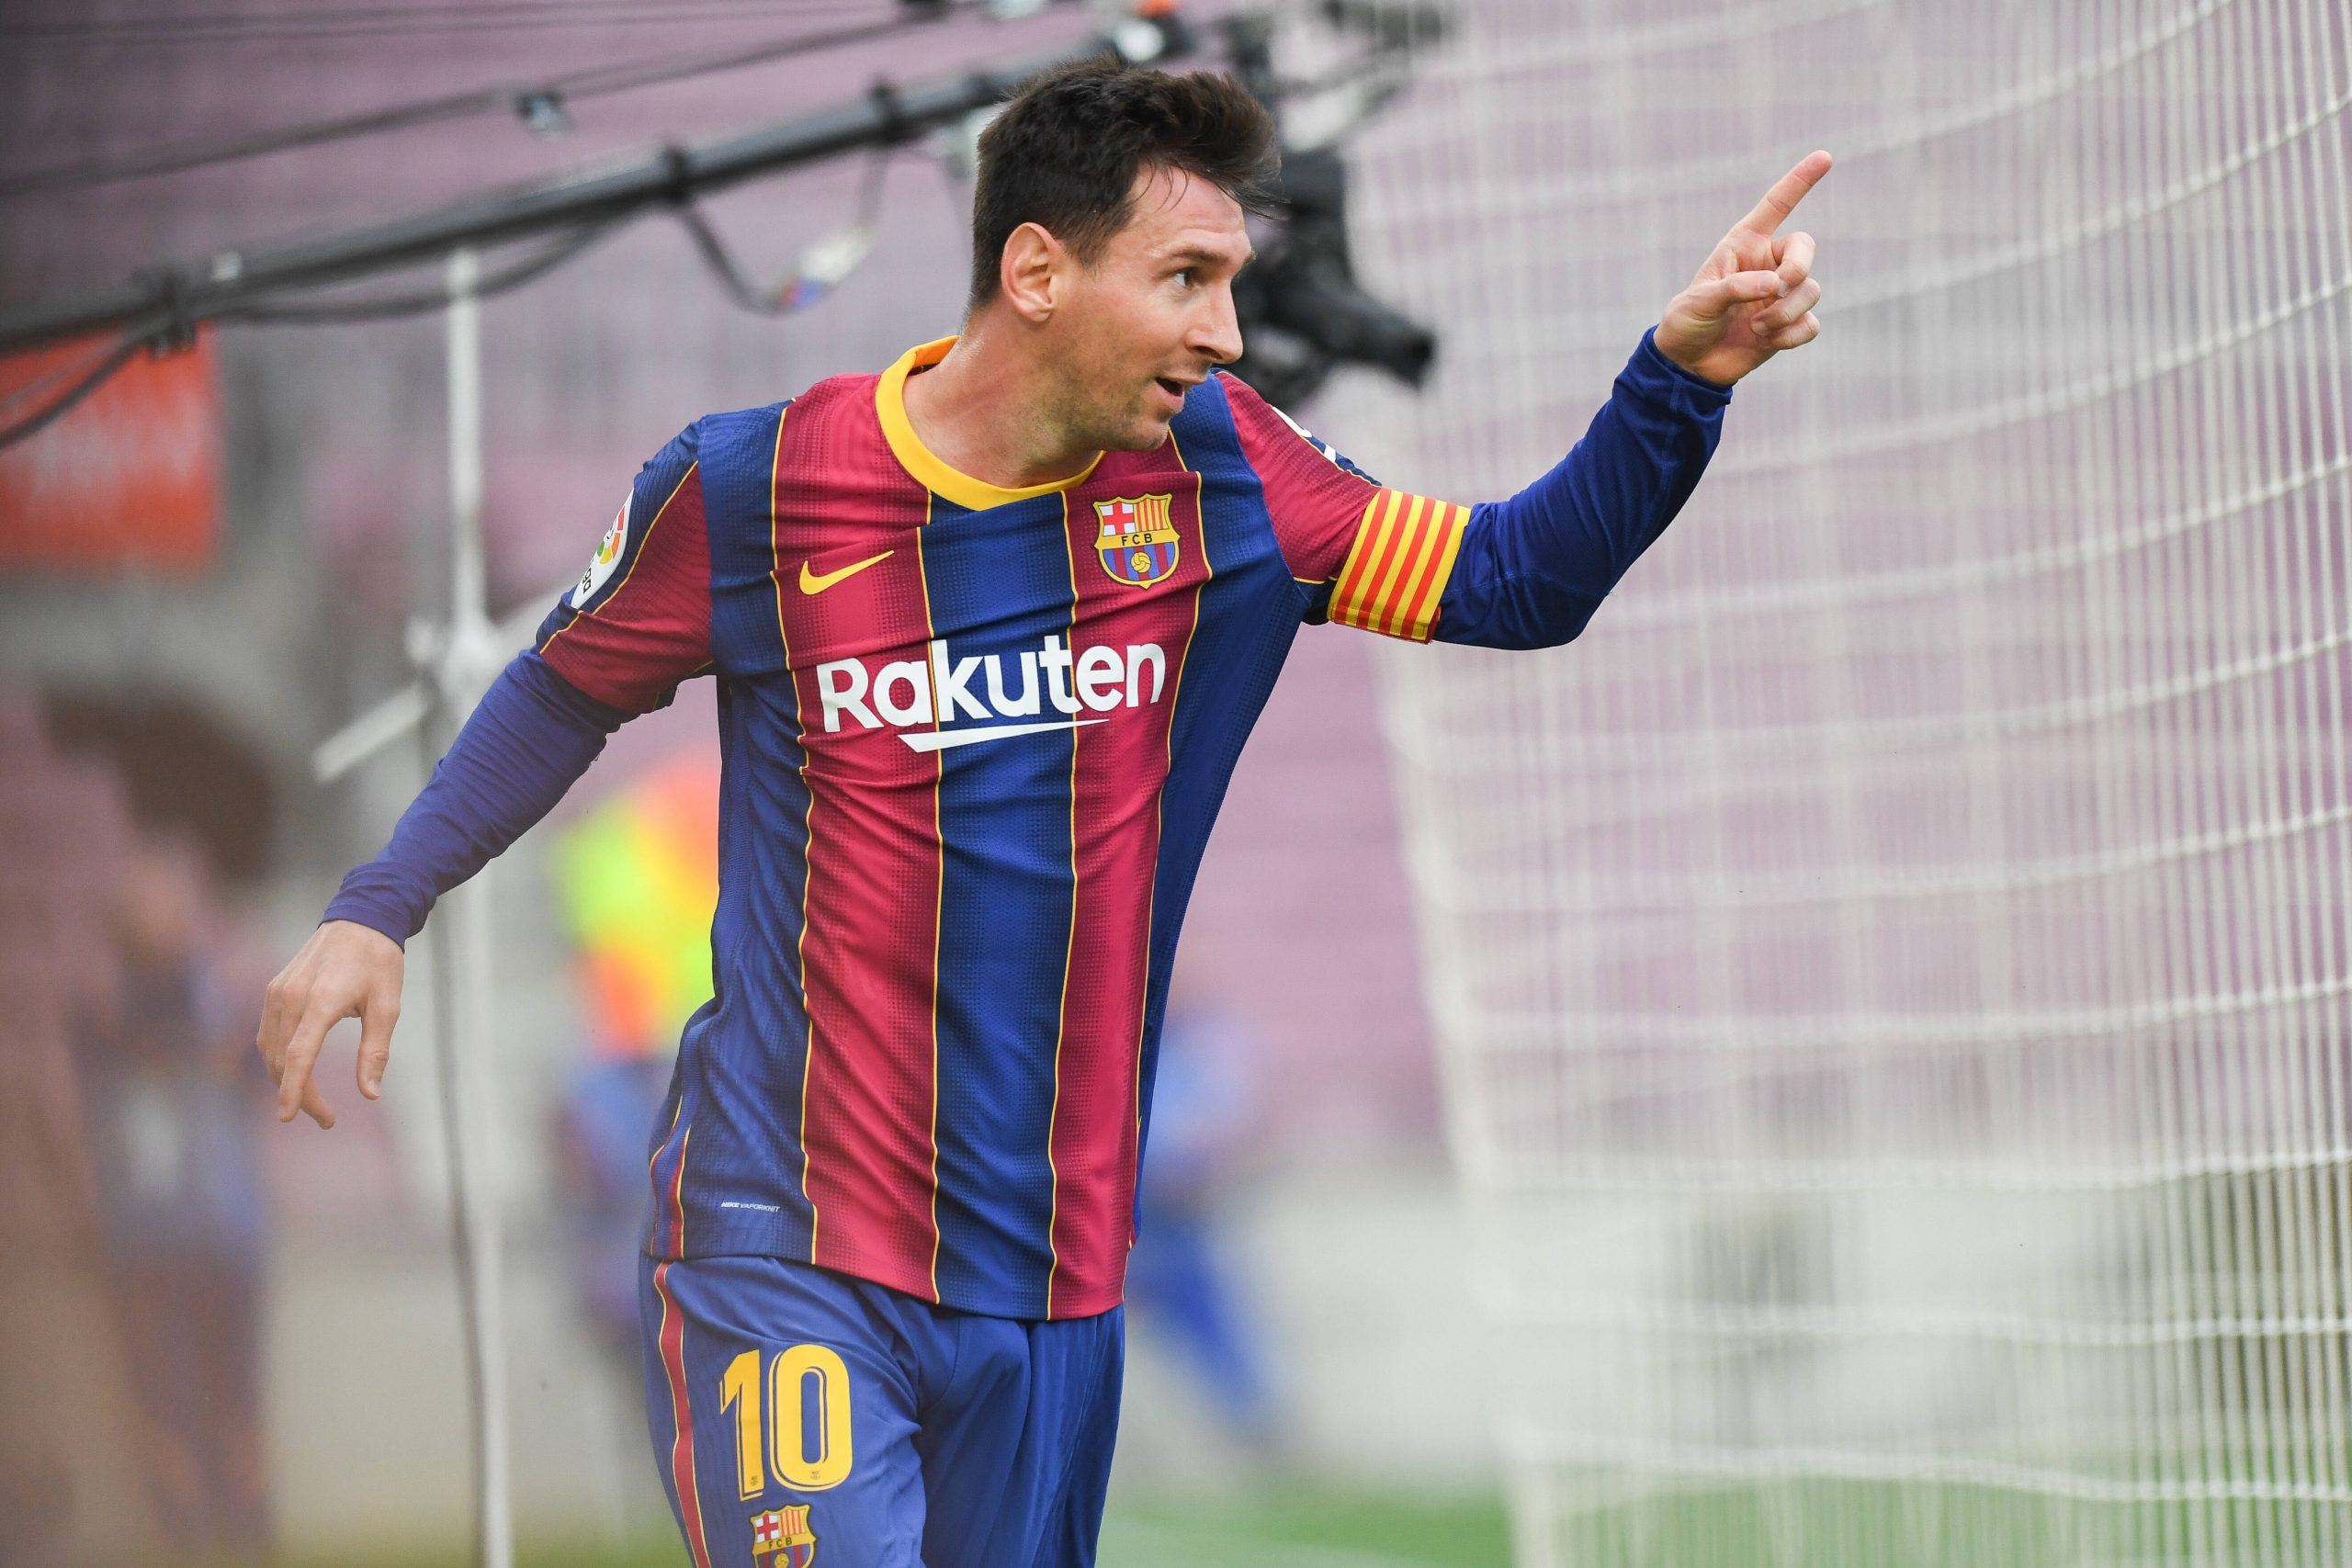 Jubelt Barcelona-Superstar Lionel Messi auf seine alten Tage doch noch über Super-League-Treffer?